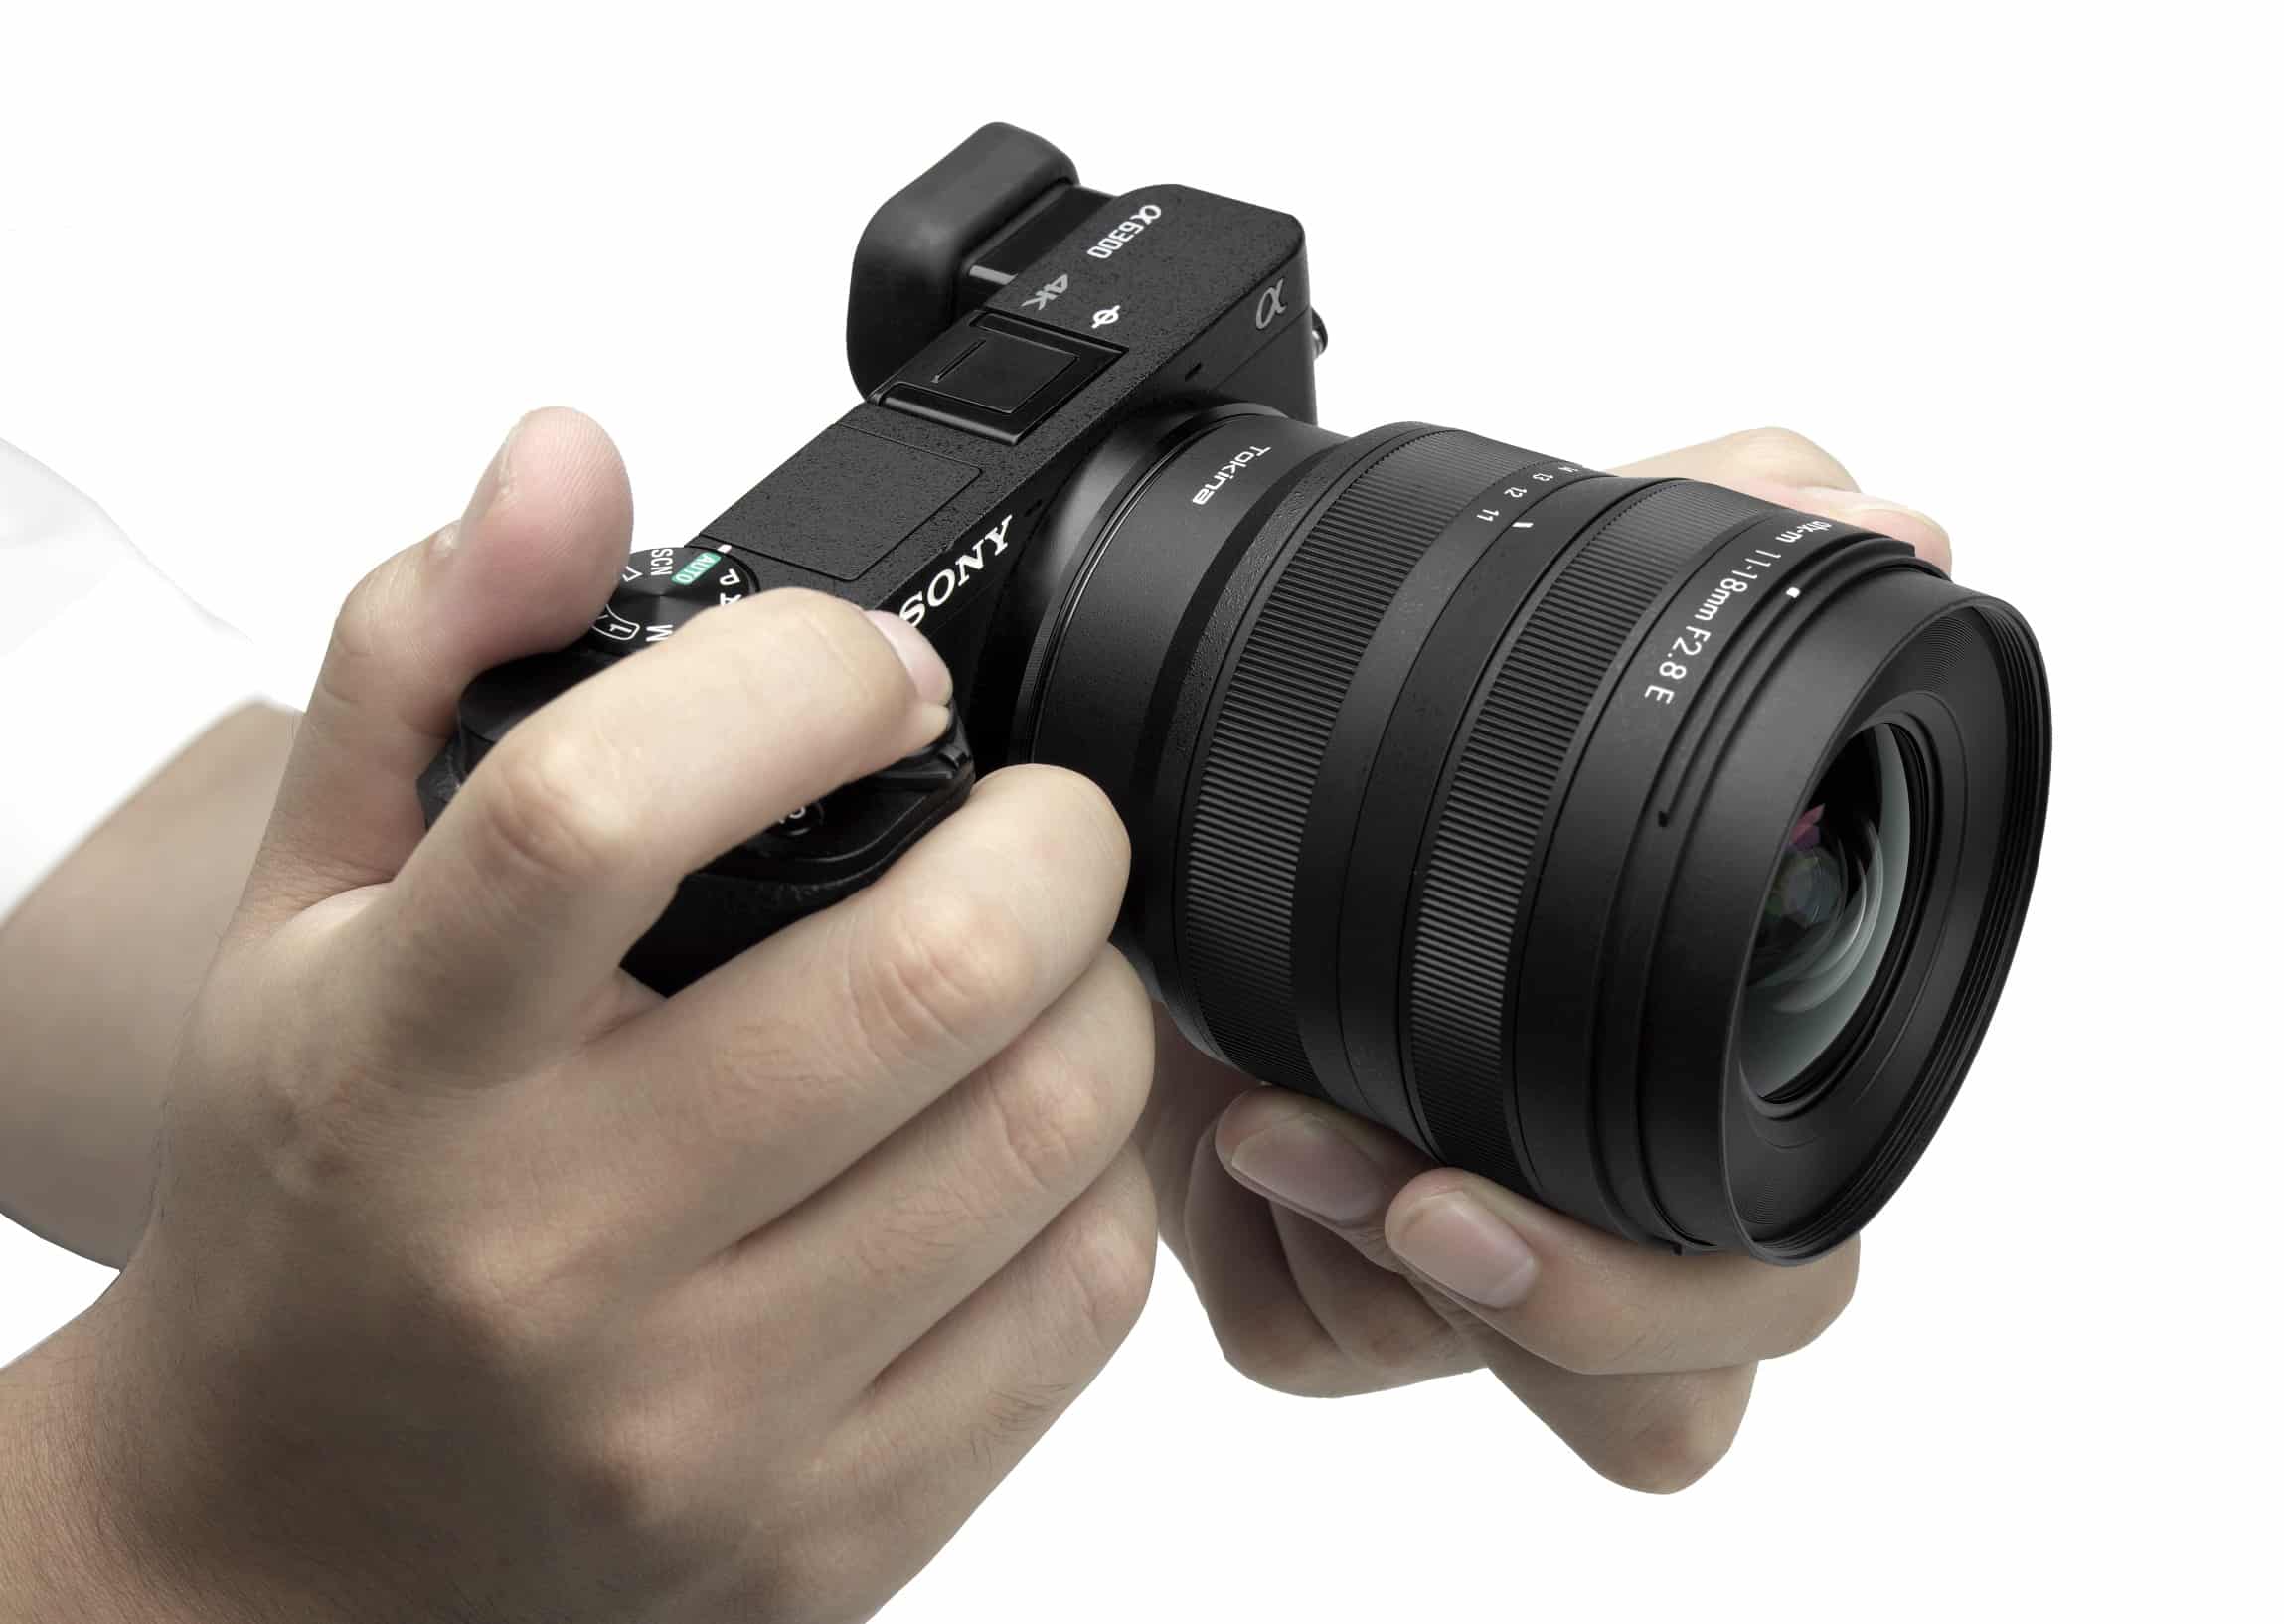 Tokina ra mắt ống kính 11-18mm F2.8 dành cho các máy ảnh APS-C ngàm E của Sony